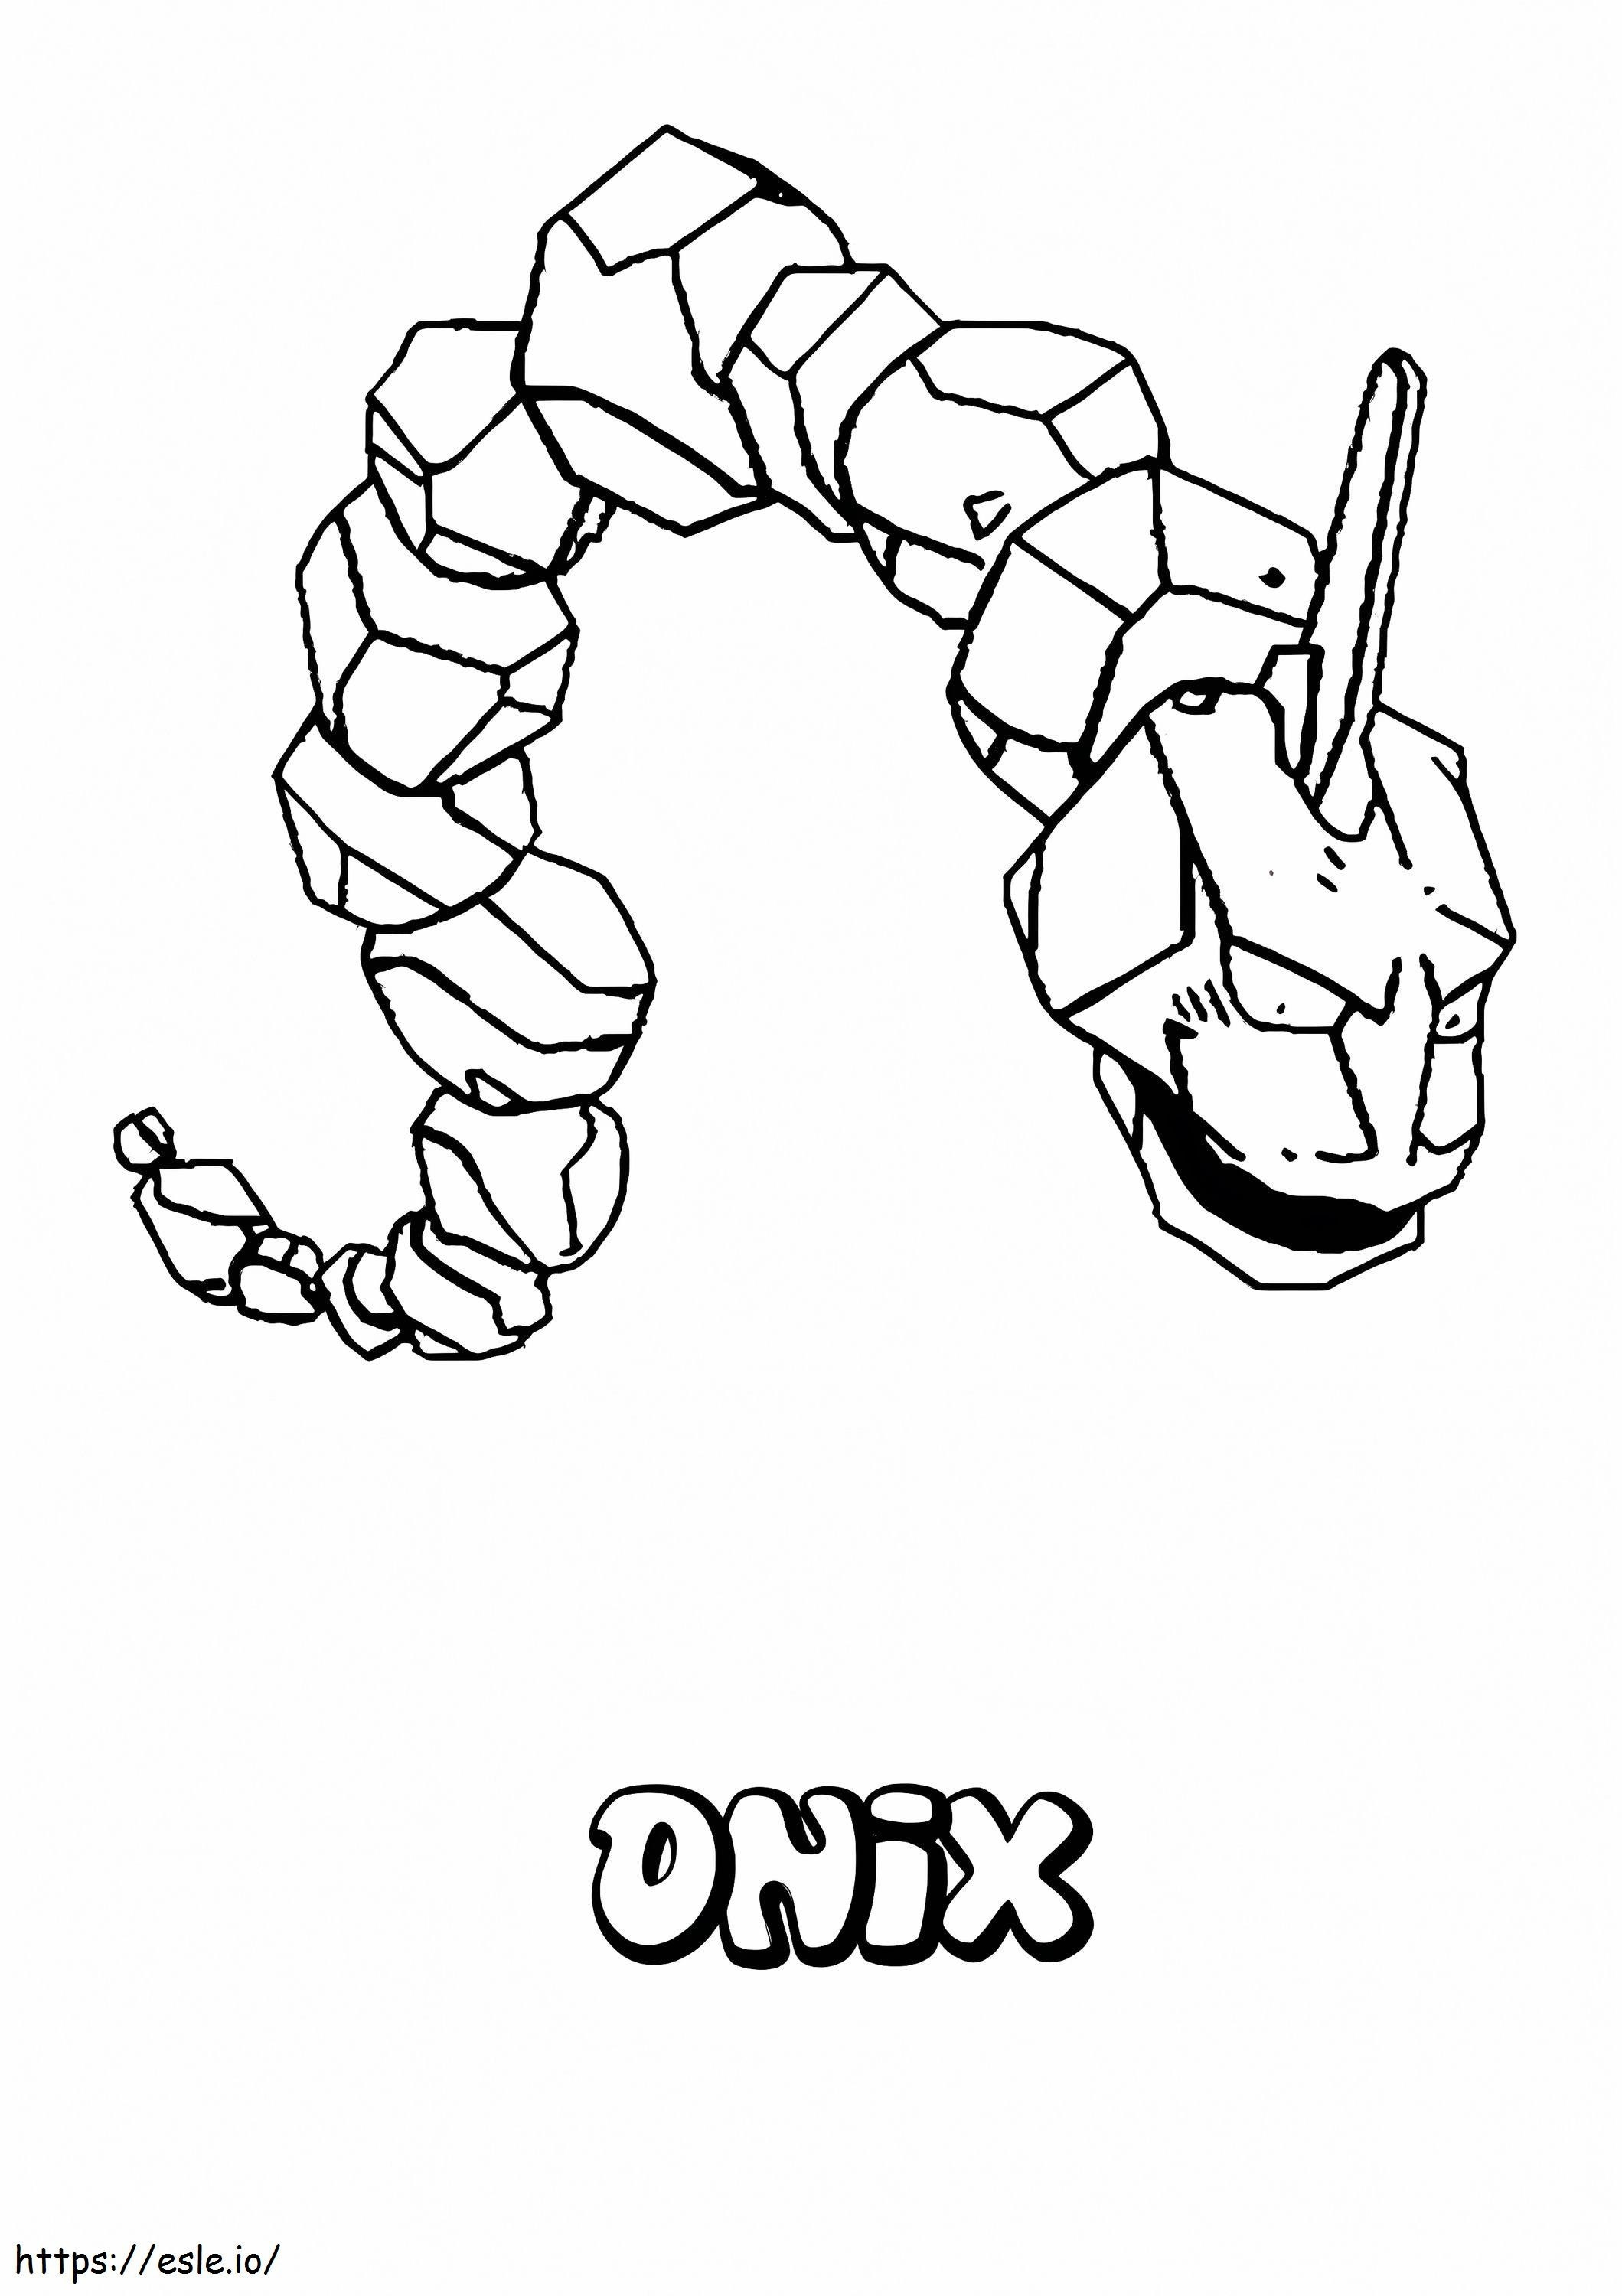 Onix 1 kleurplaat kleurplaat